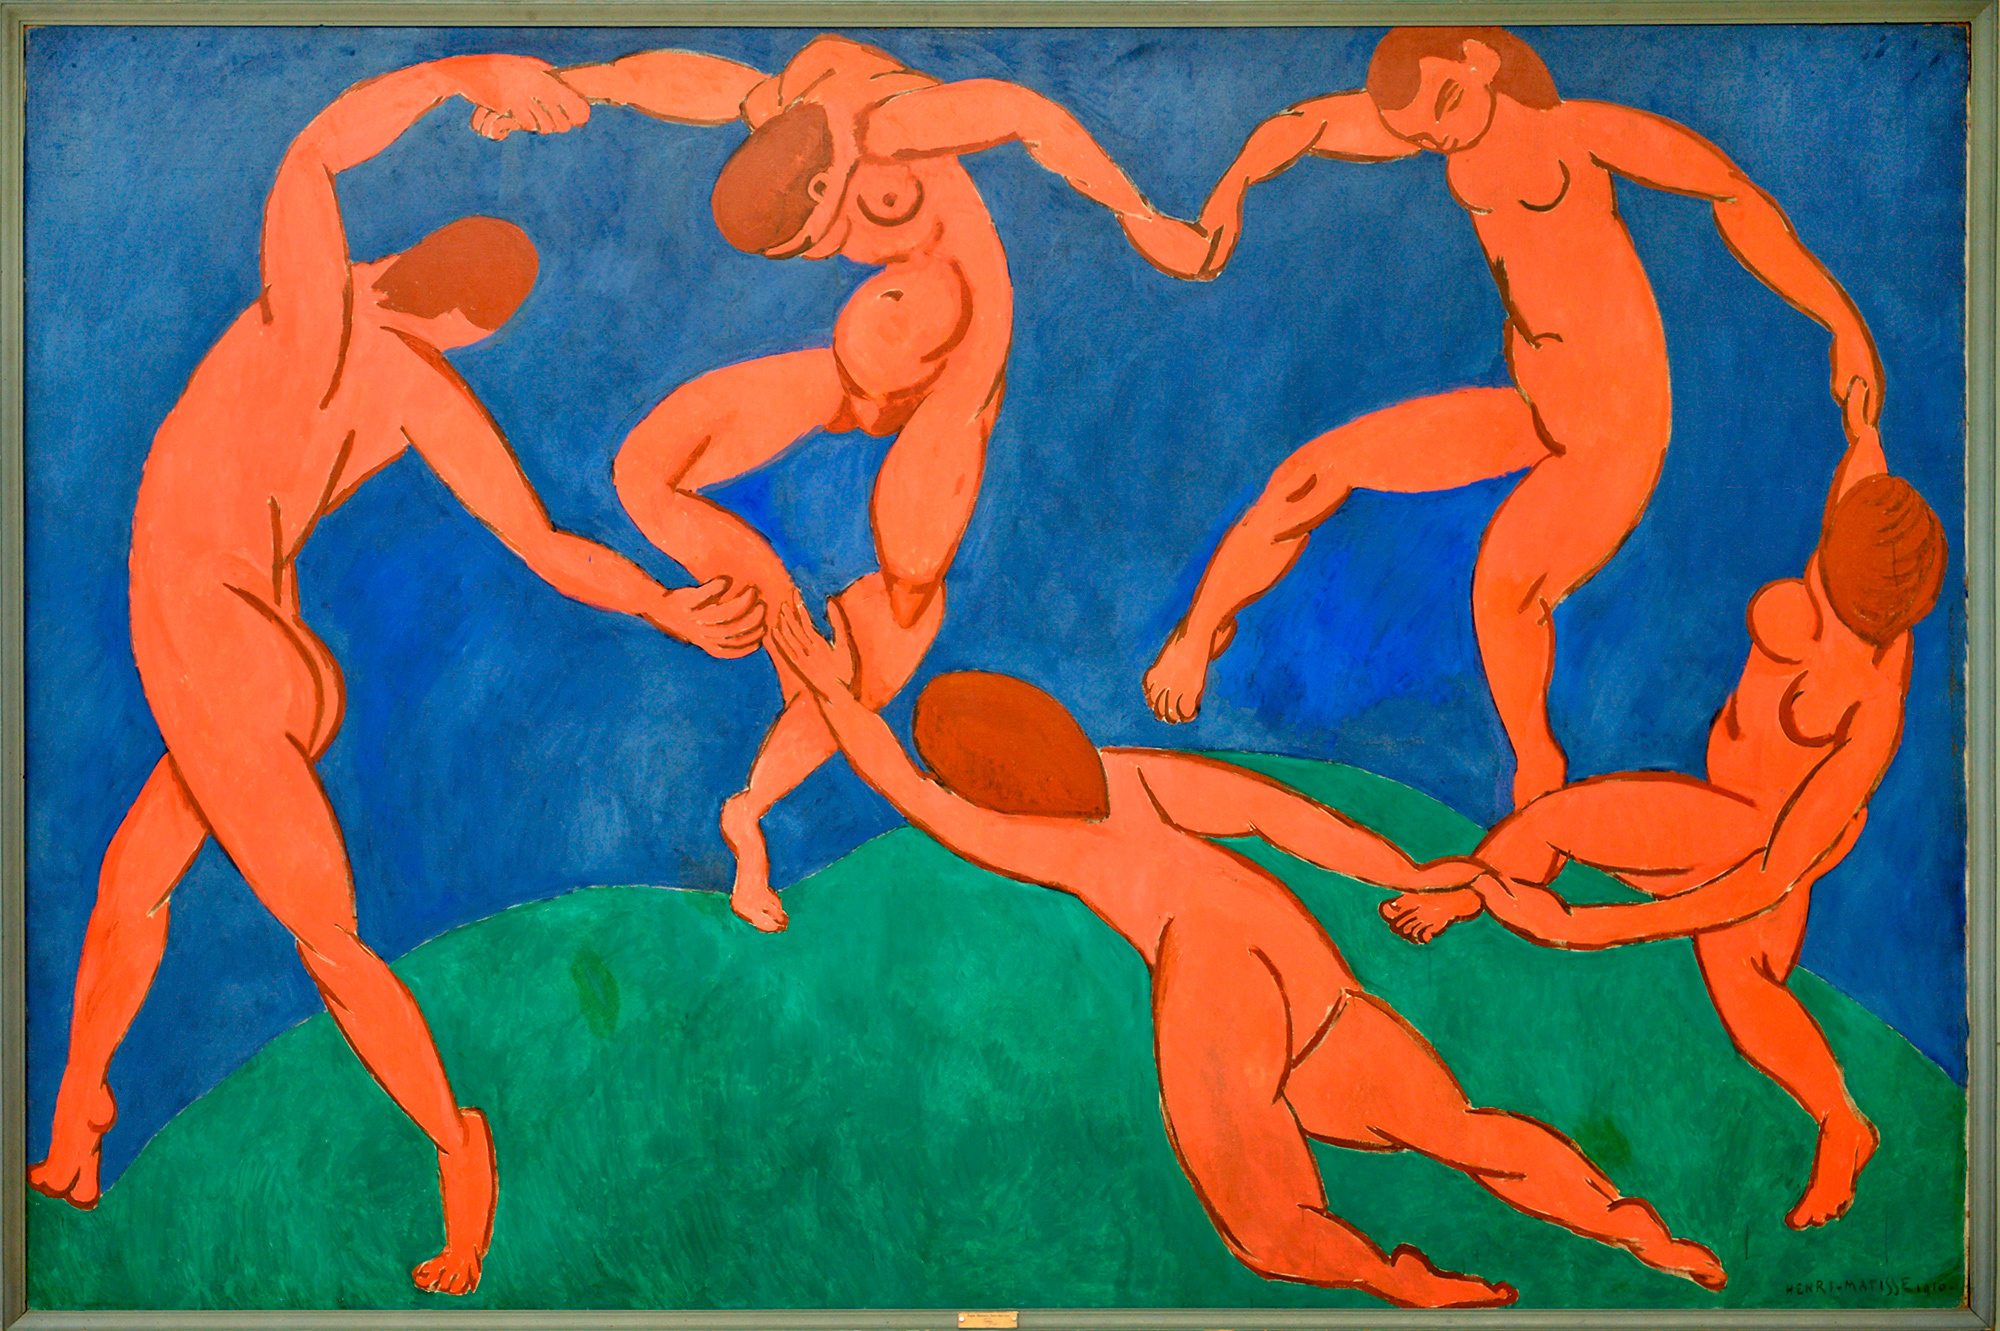 La Danza de Henri Matisse. 1906